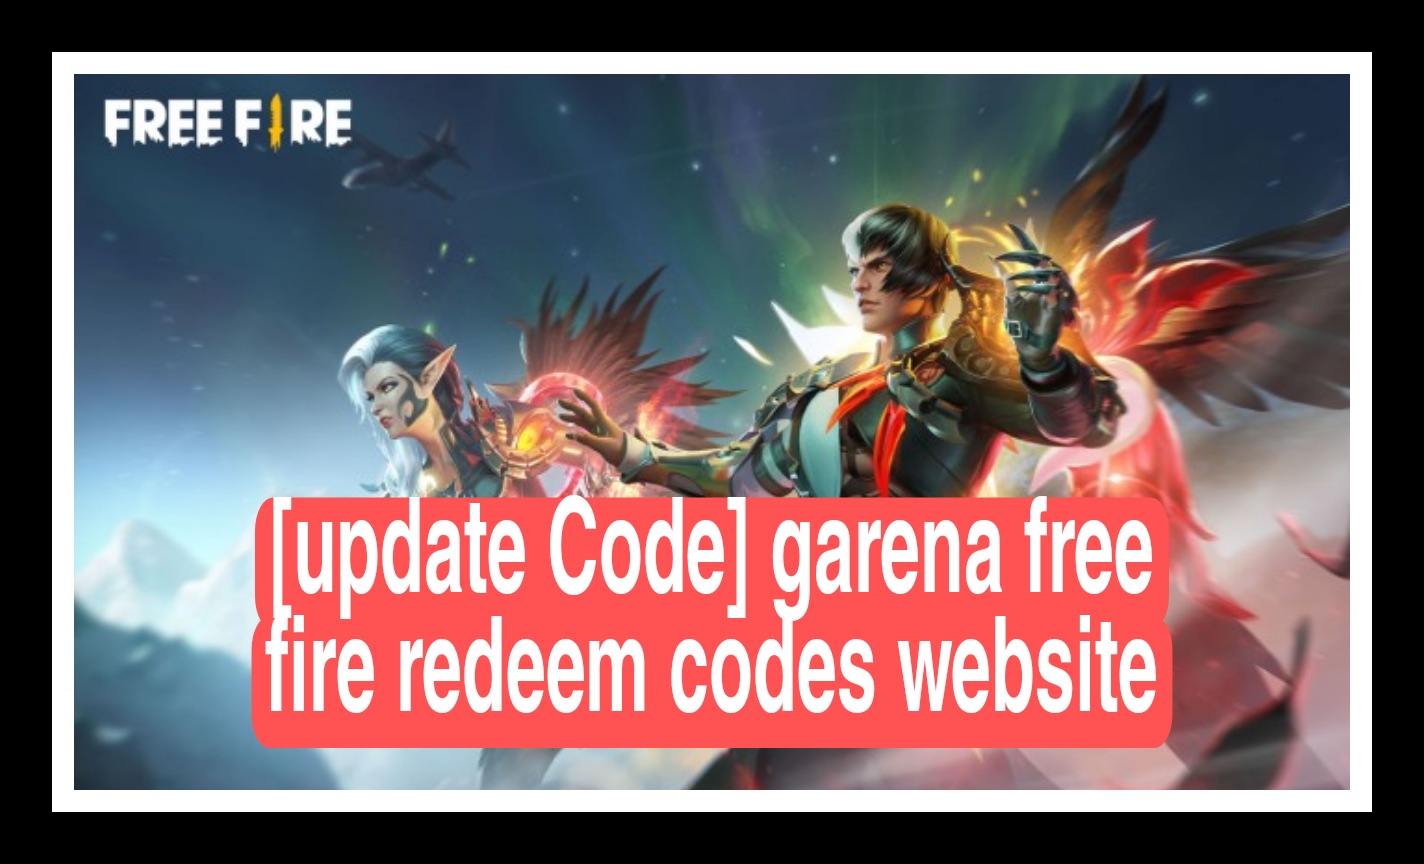 [update Code] garena free fire redeem codes website